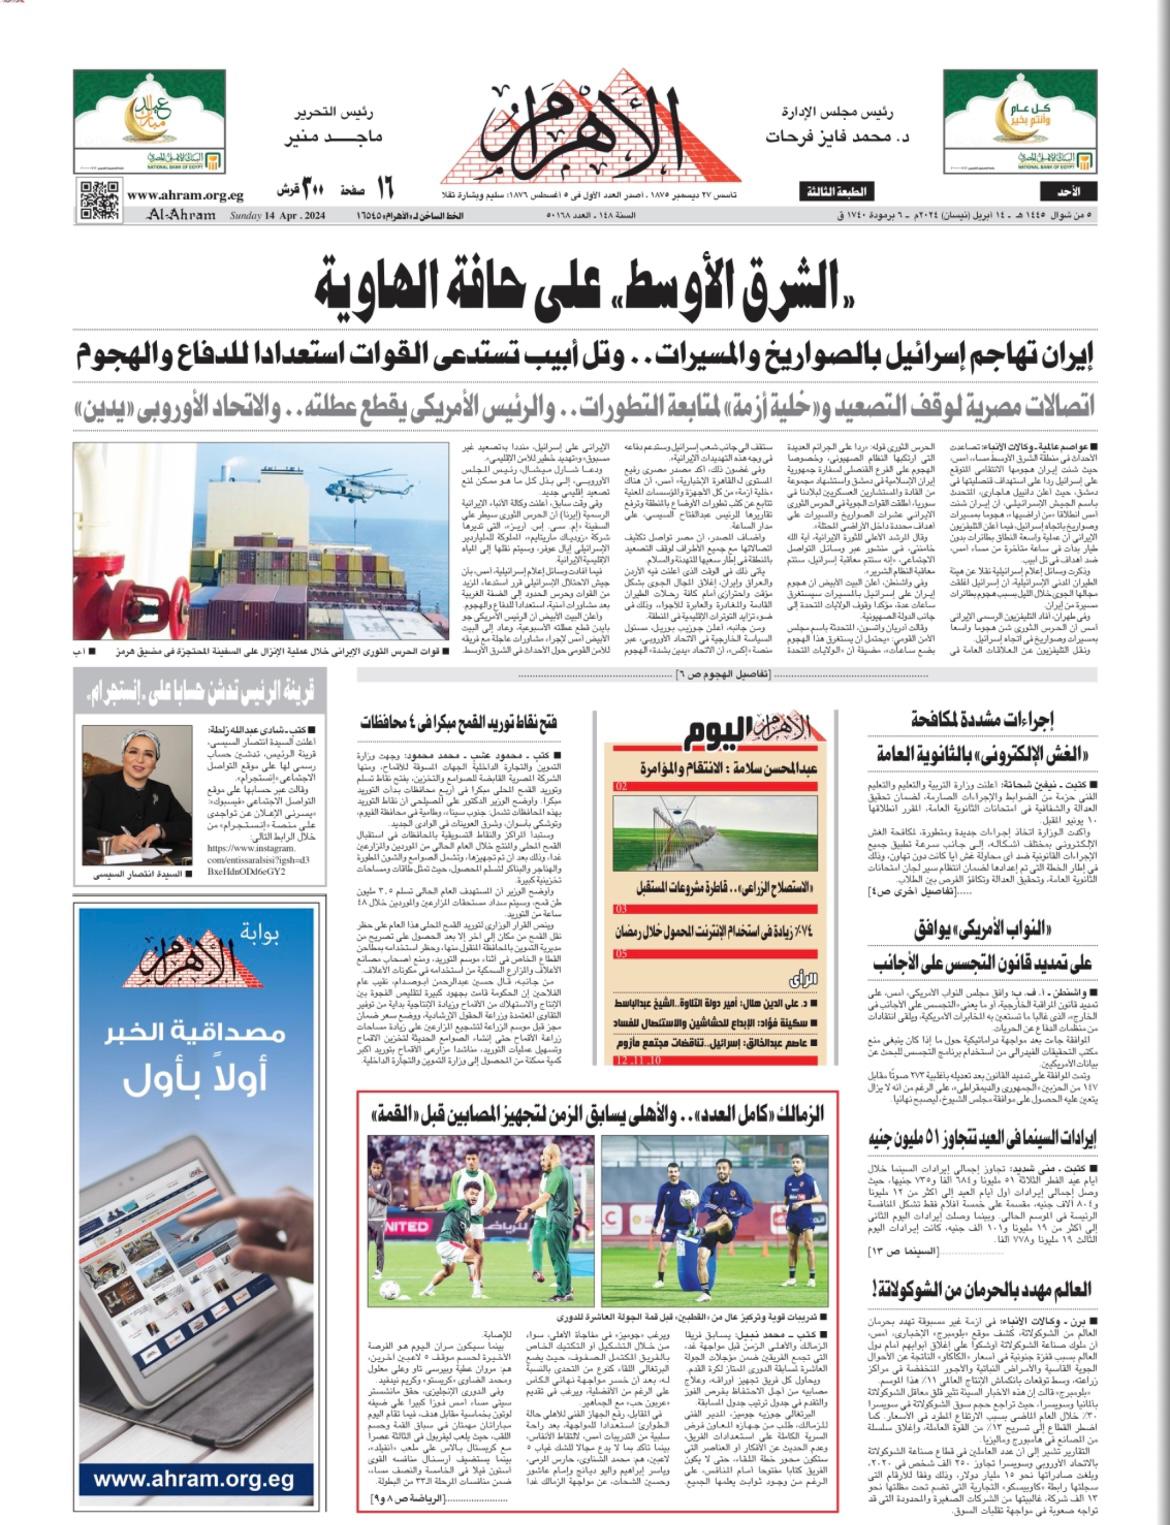 השער בעיתון המצרי אל-אהראם: המזרח התיכון על קצה הת